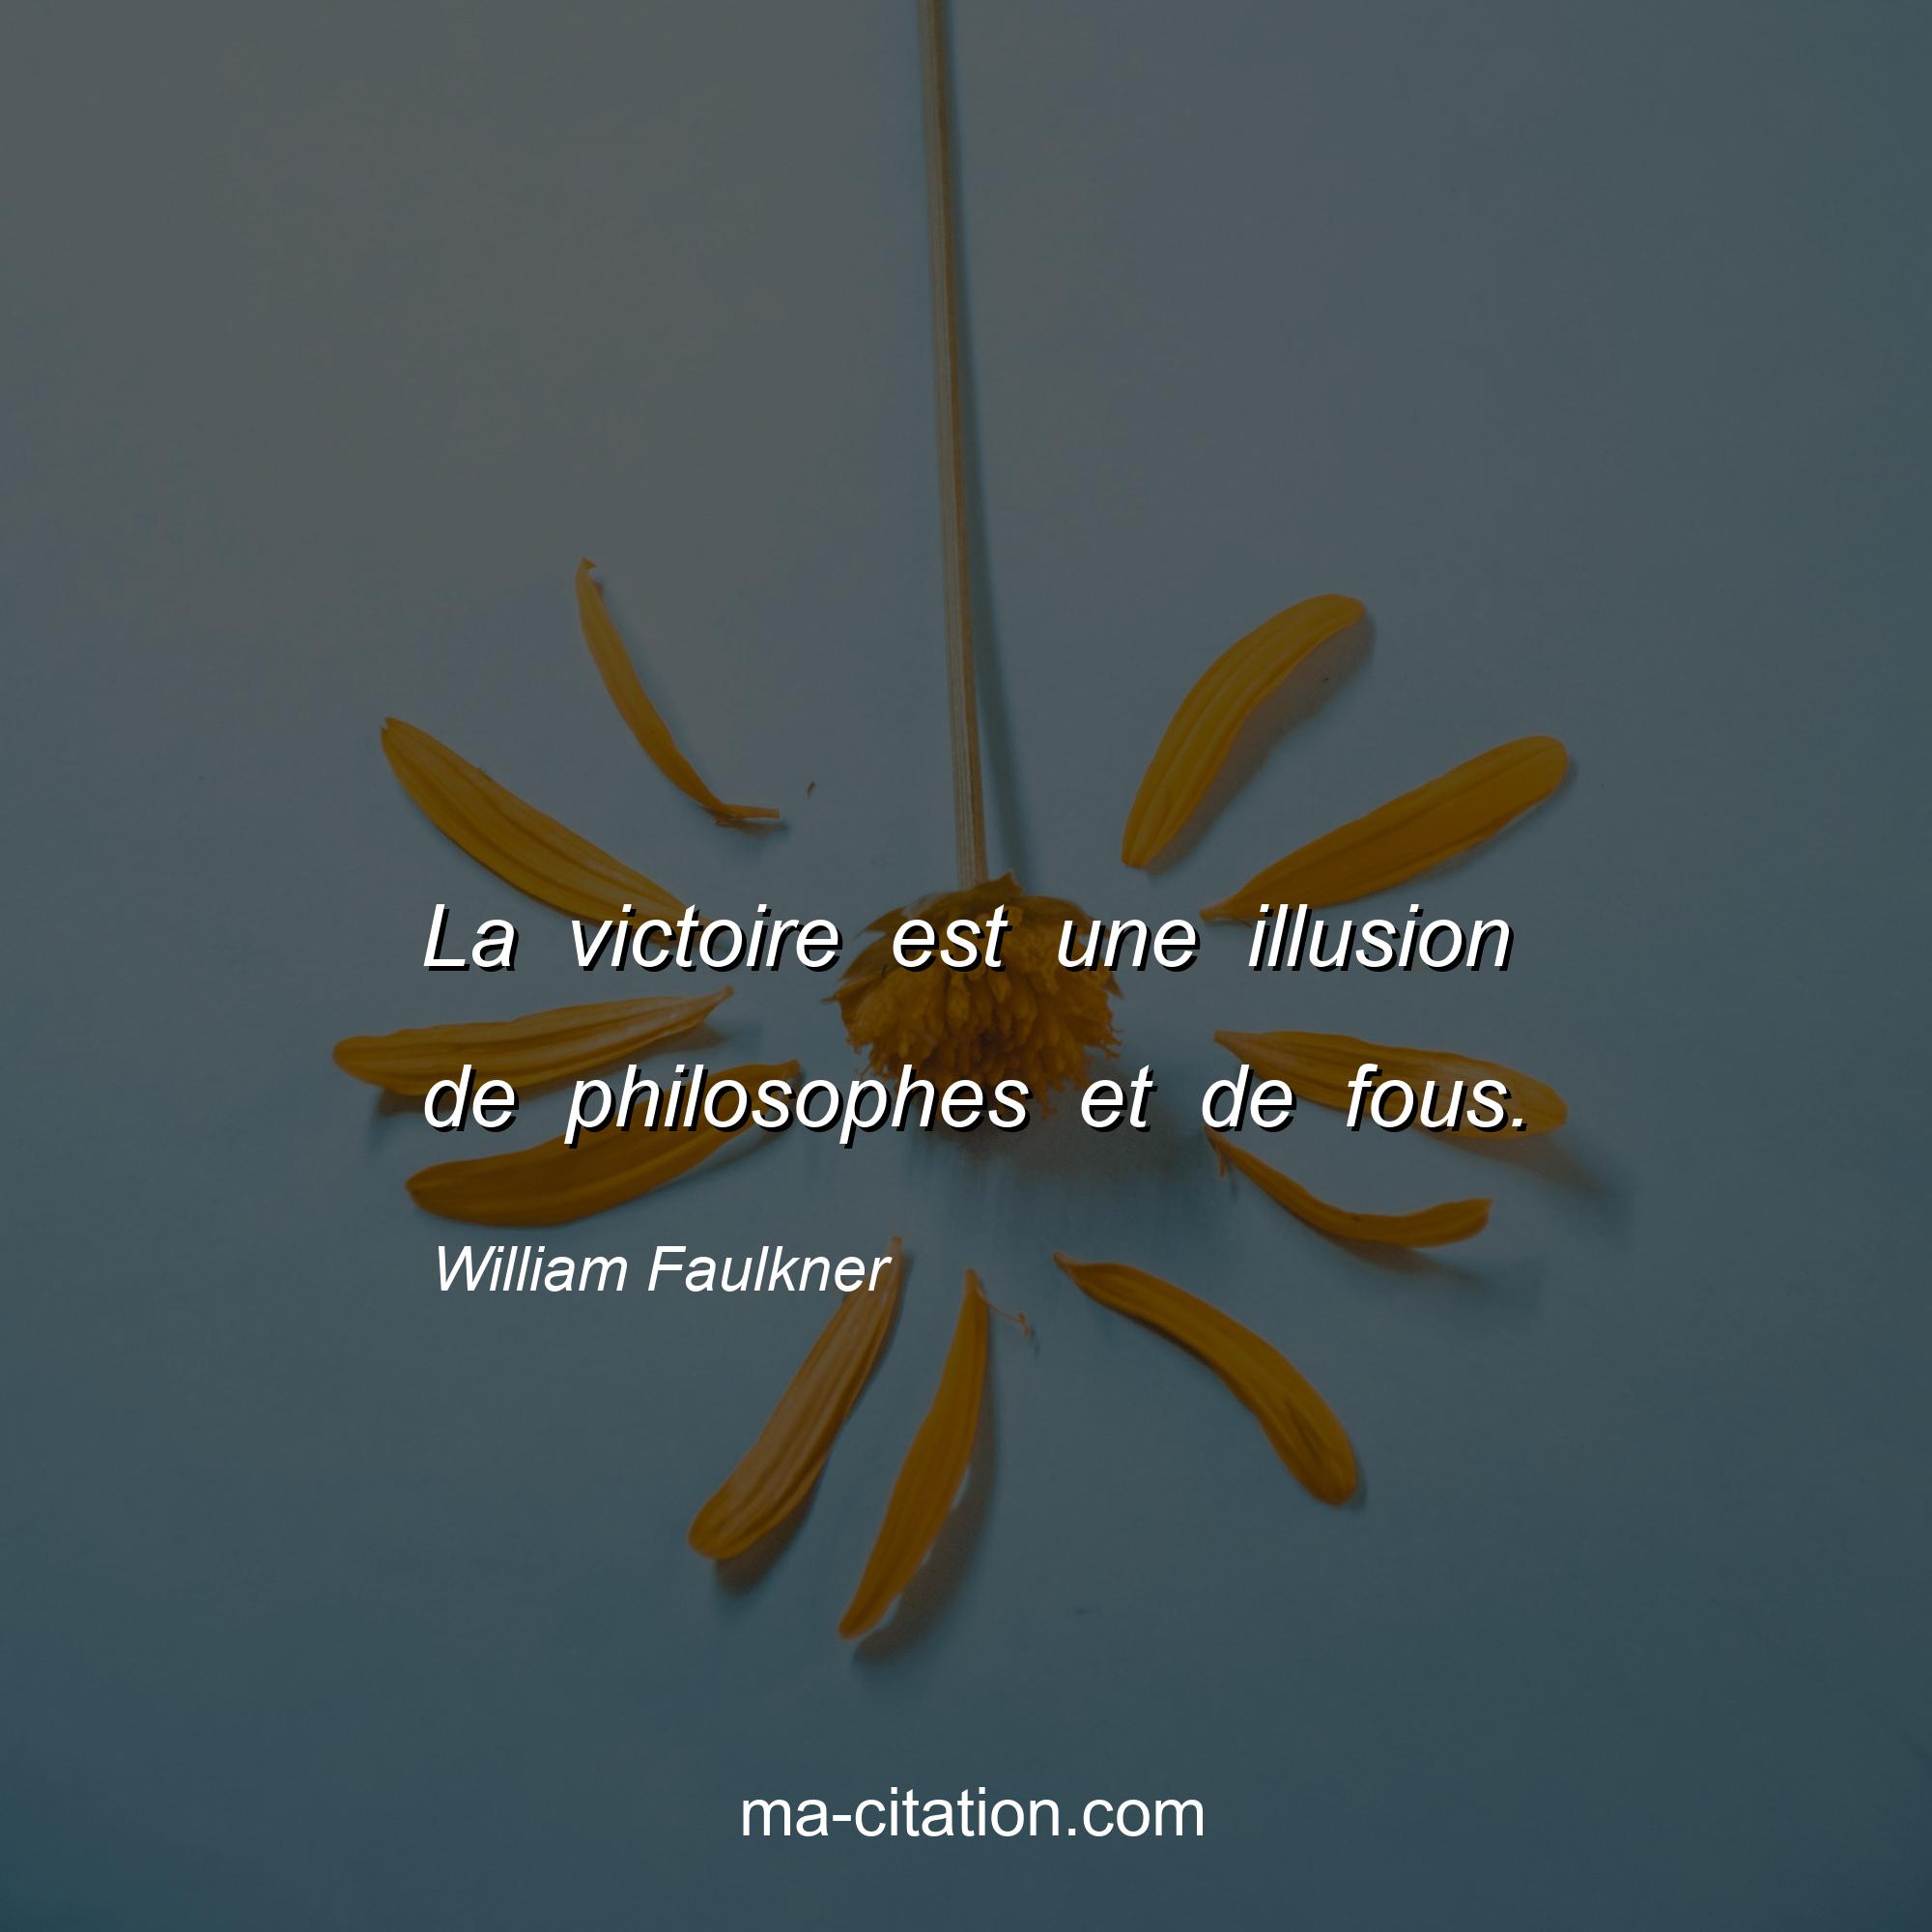 William Faulkner : La victoire est une illusion de philosophes et de fous.